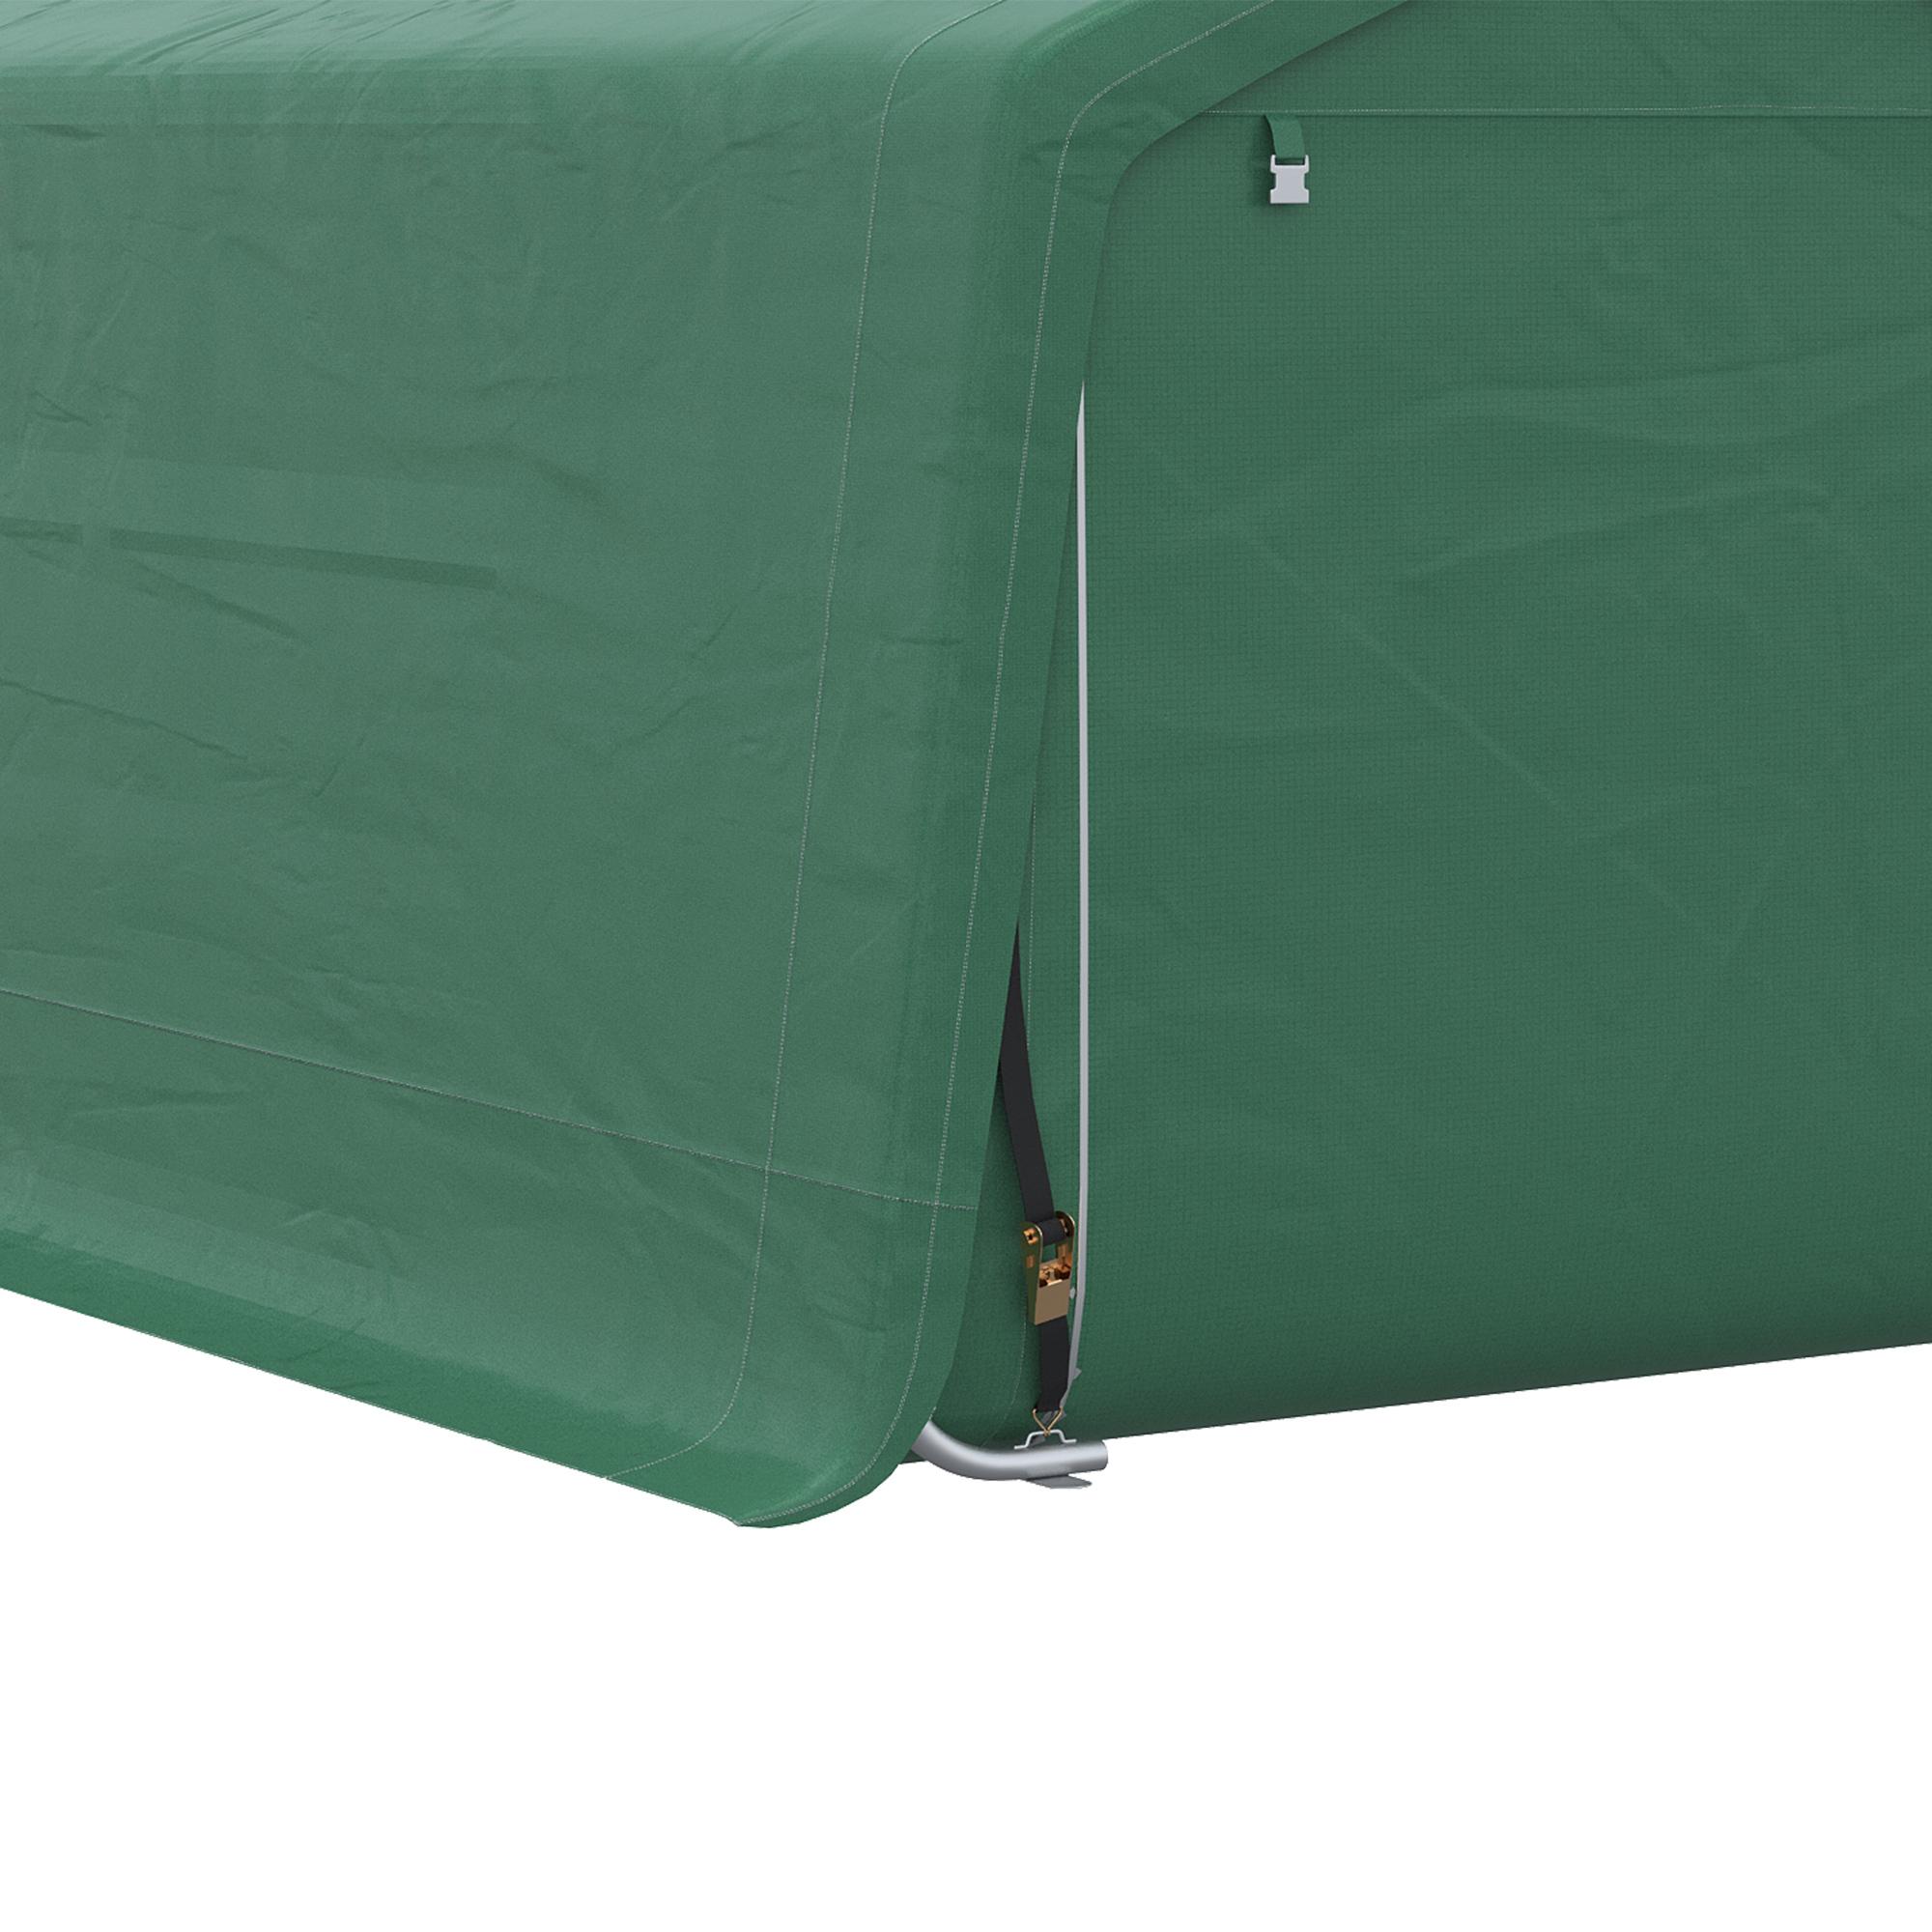 Tente garage carport dim. 6L x 3l x 2,62H m acier galvanisé PE haute densité 180 g/m² imperméable anti-UV vert